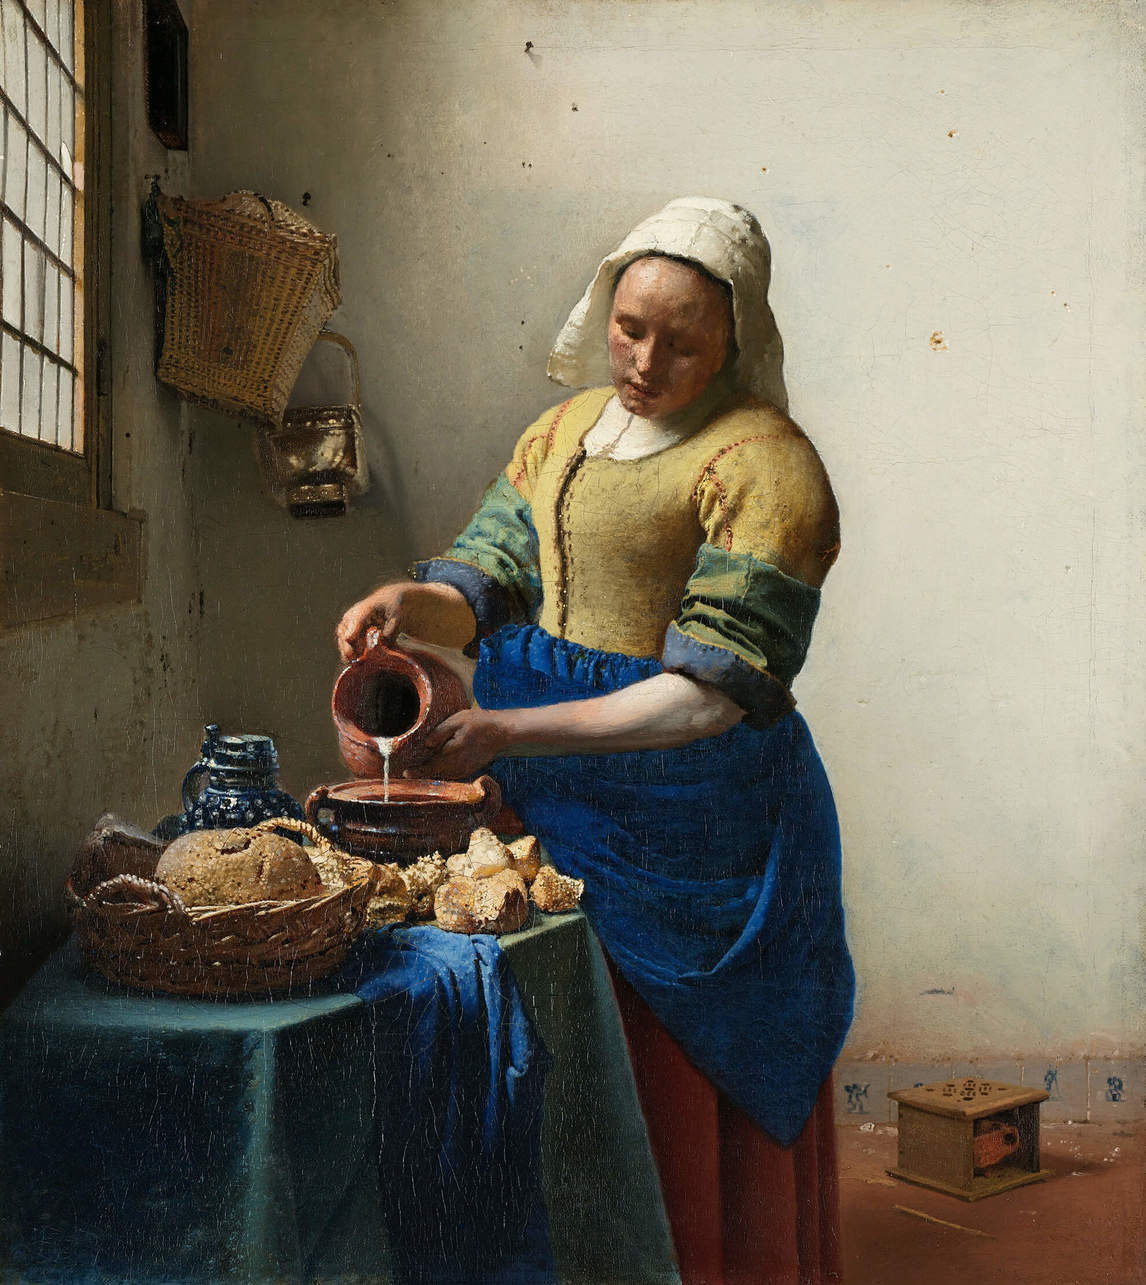 Johannes Vermeer, The Milkmaid, c.1660